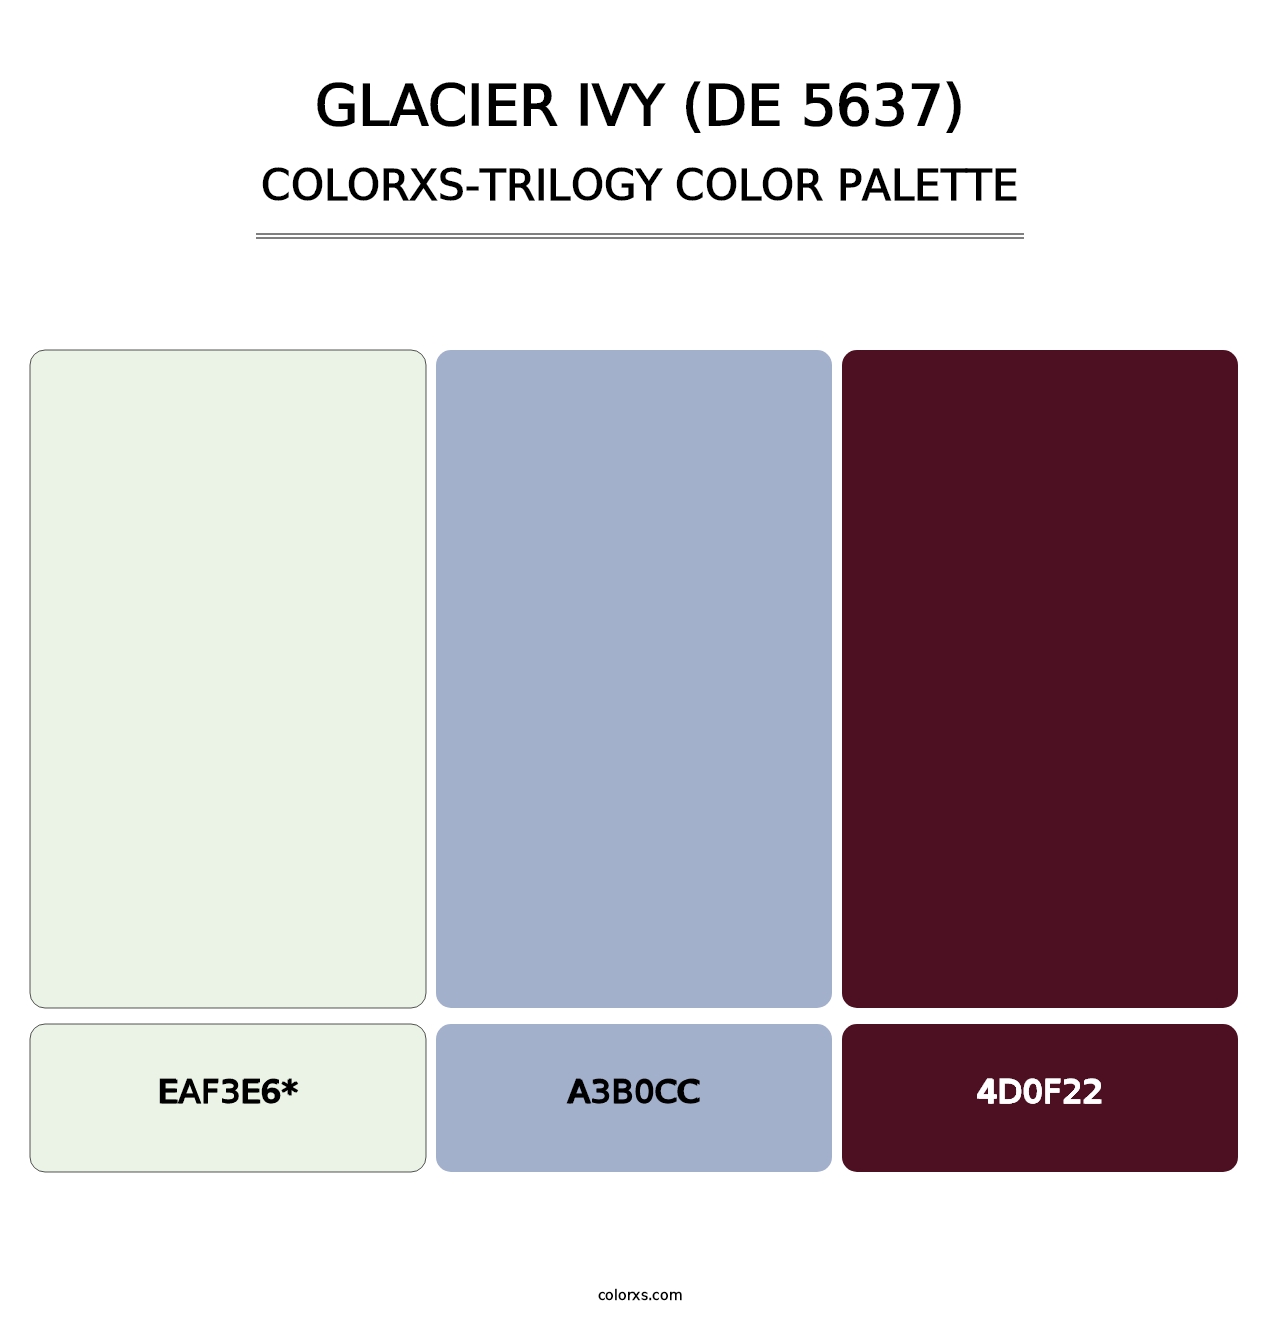 Glacier Ivy (DE 5637) - Colorxs Trilogy Palette